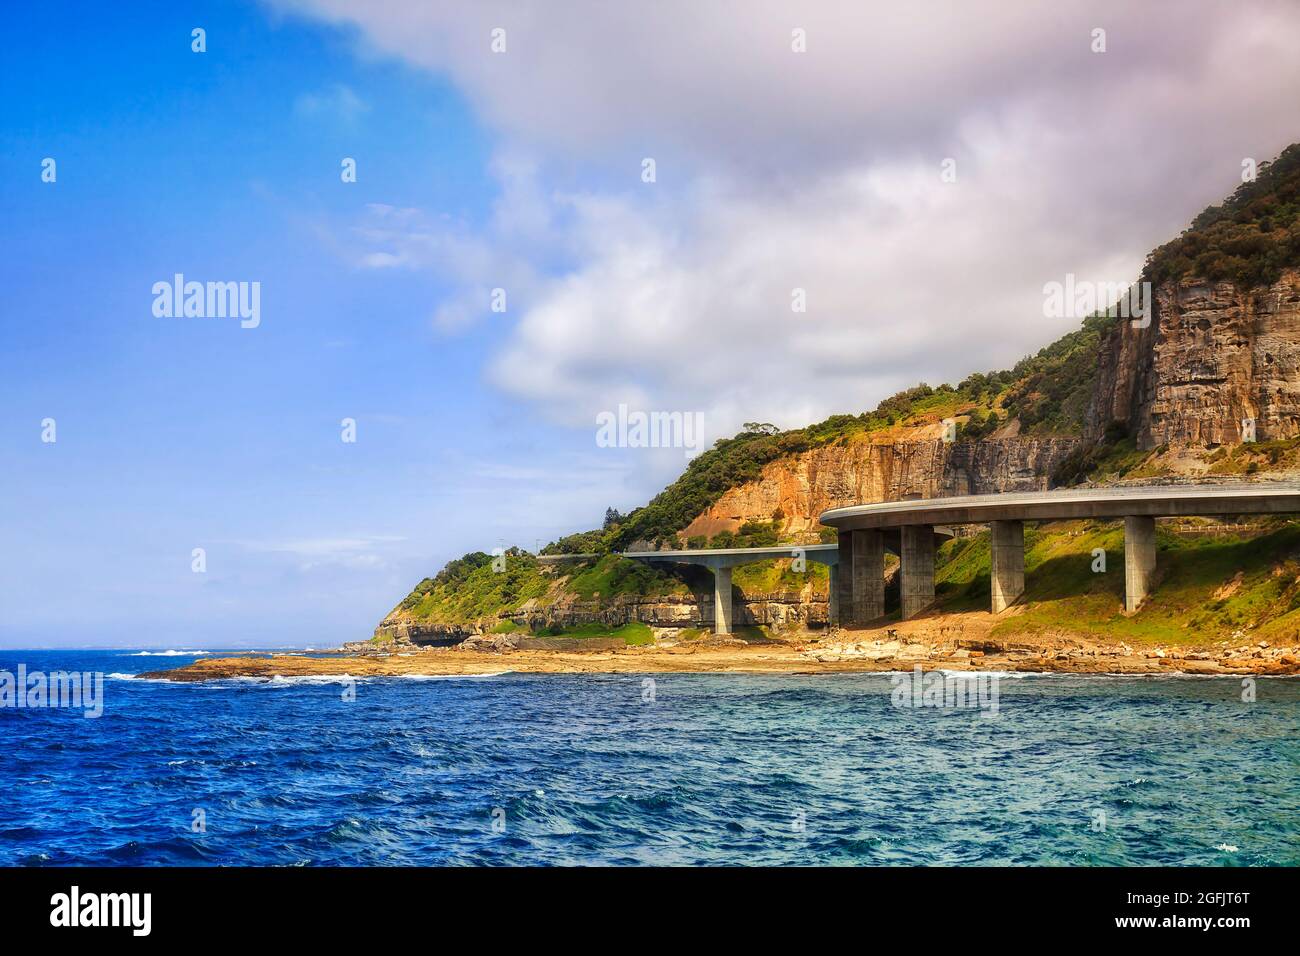 Der Grand Pacific Drive Sea Cliff Bridge umrundelt Sandsteinfelsen an der Pazifikküste Australiens. Stockfoto